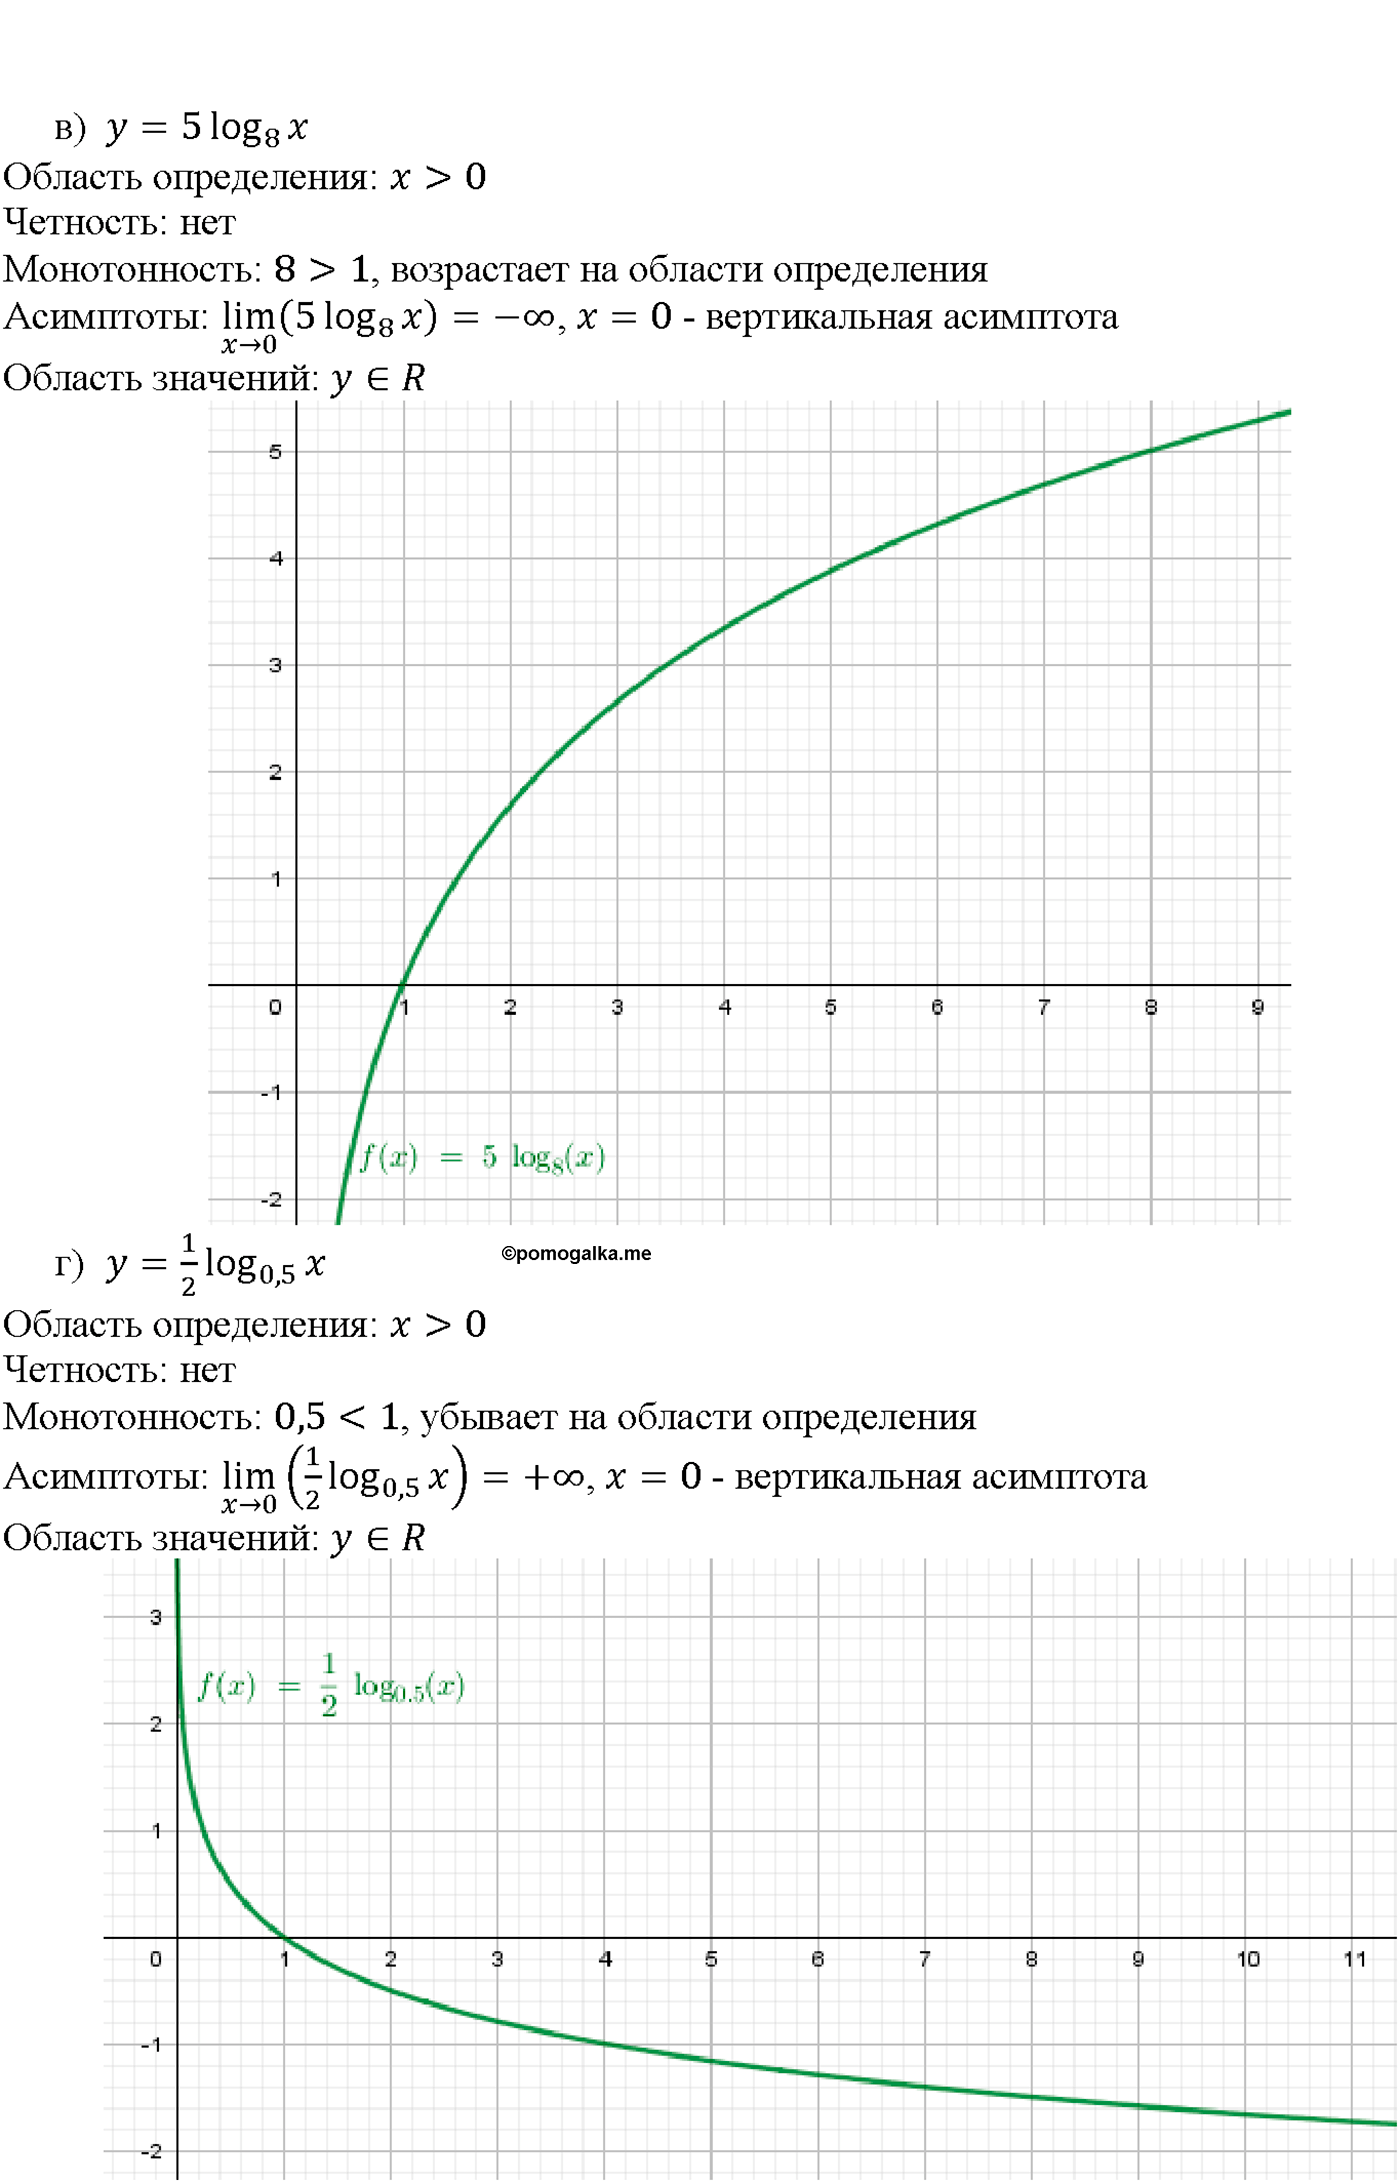 задача №42.15 алгебра 10-11 класс Мордкович